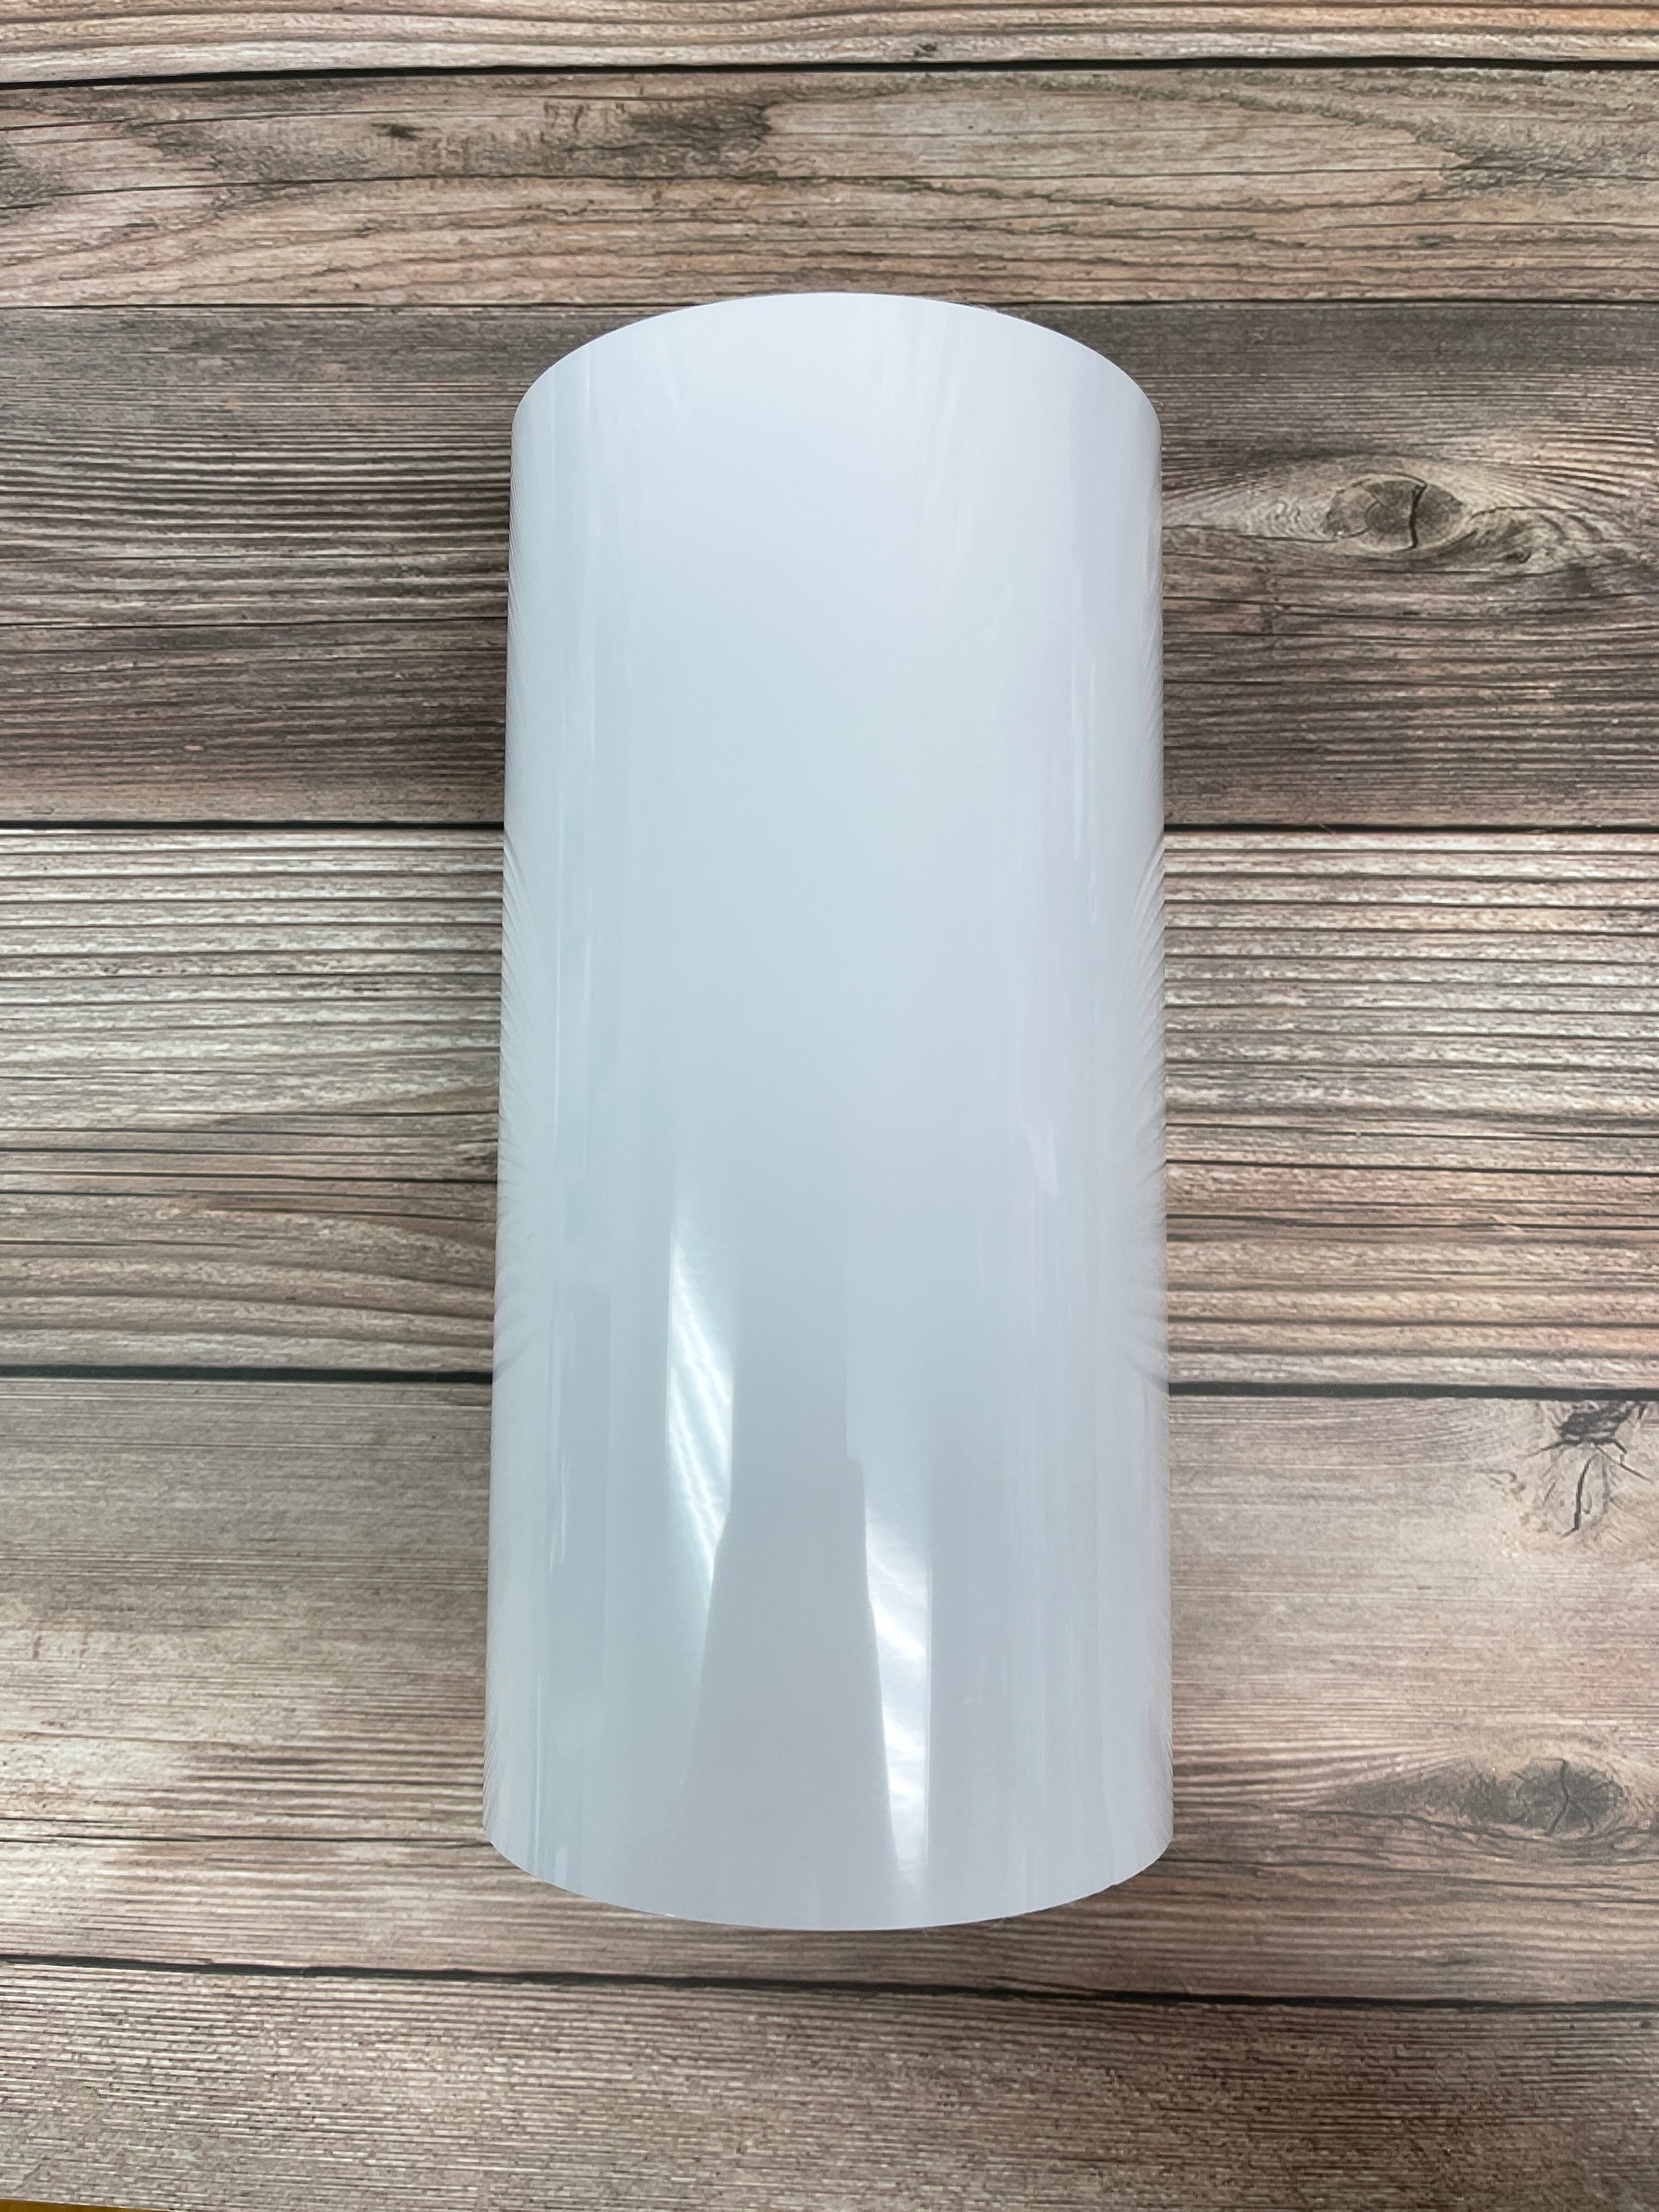 Premium DIY Lampshade Materials Adhesive Styrene Sheet, Pre-cut Roll for  Repair Create Table & Floor Lampshades, Drum Lampshade Supplies 